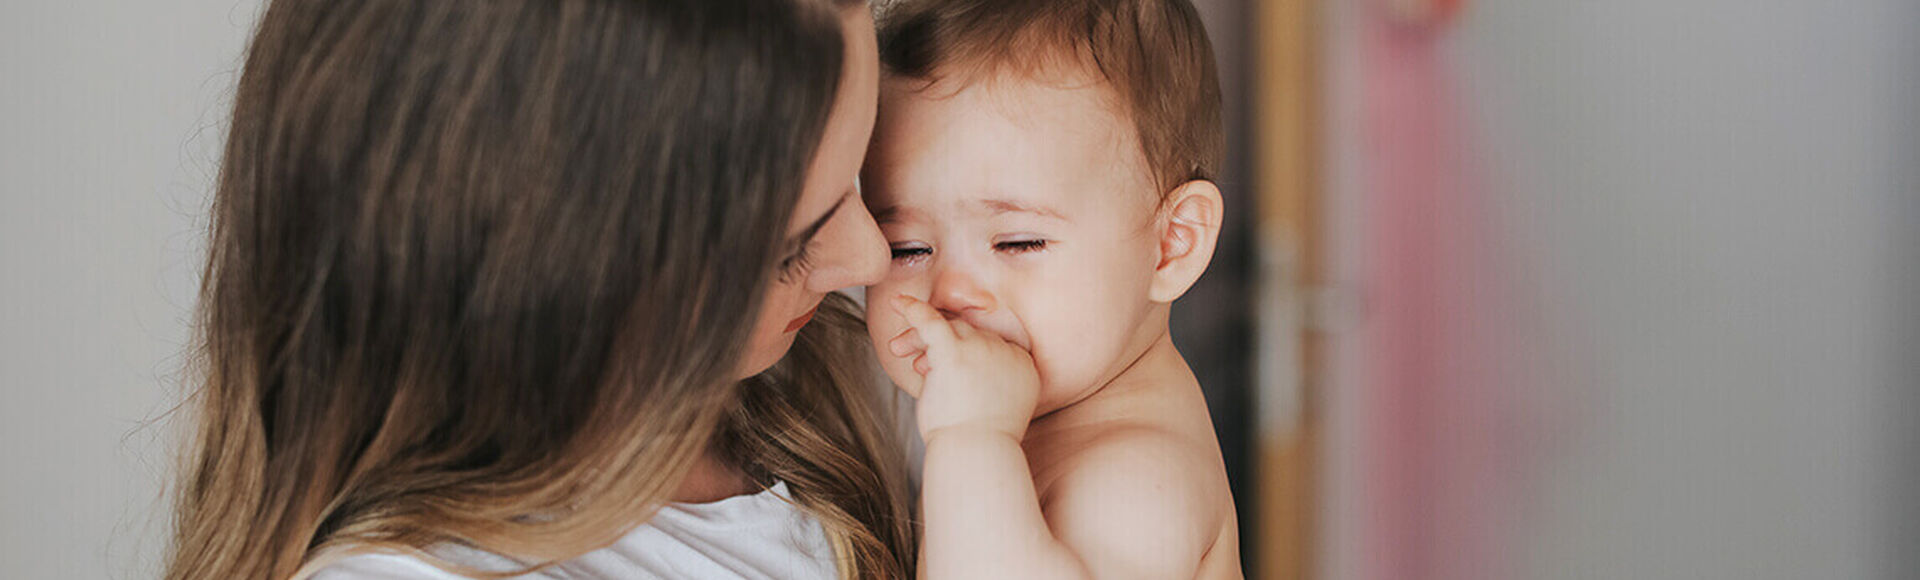 Bebê chorando no colo da mãe